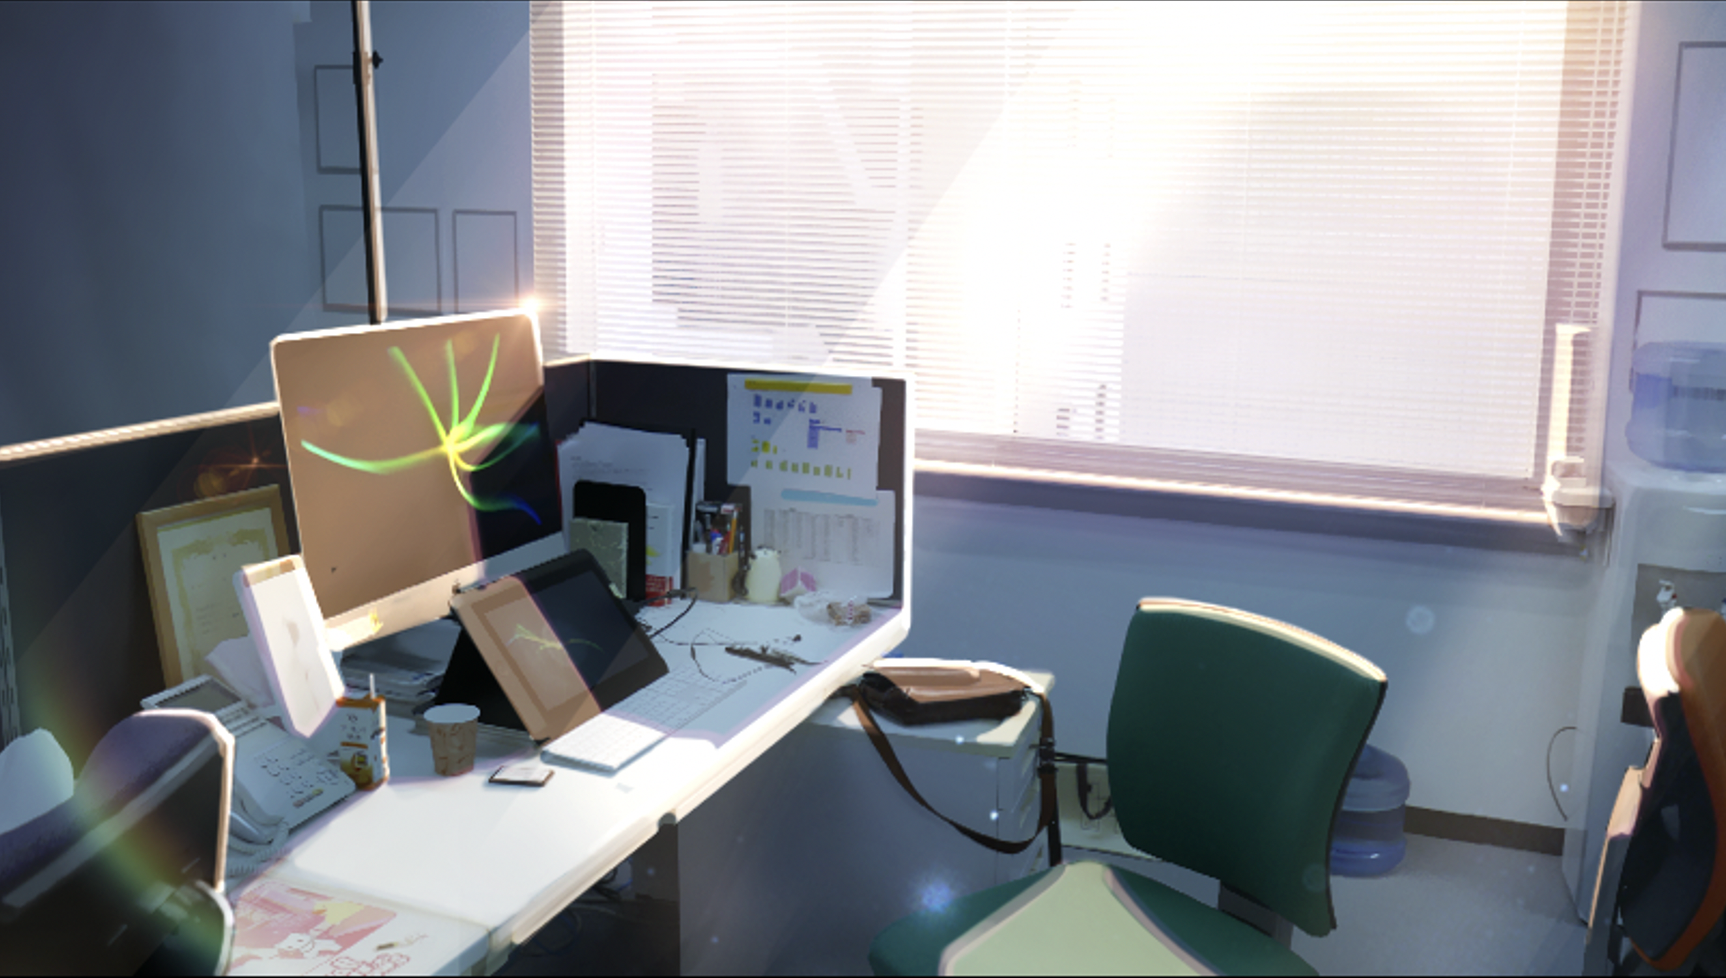 アクア技術ブログvol 4 フォトバッシュで作るアニメ風背景 室内編 株式会社aquastar